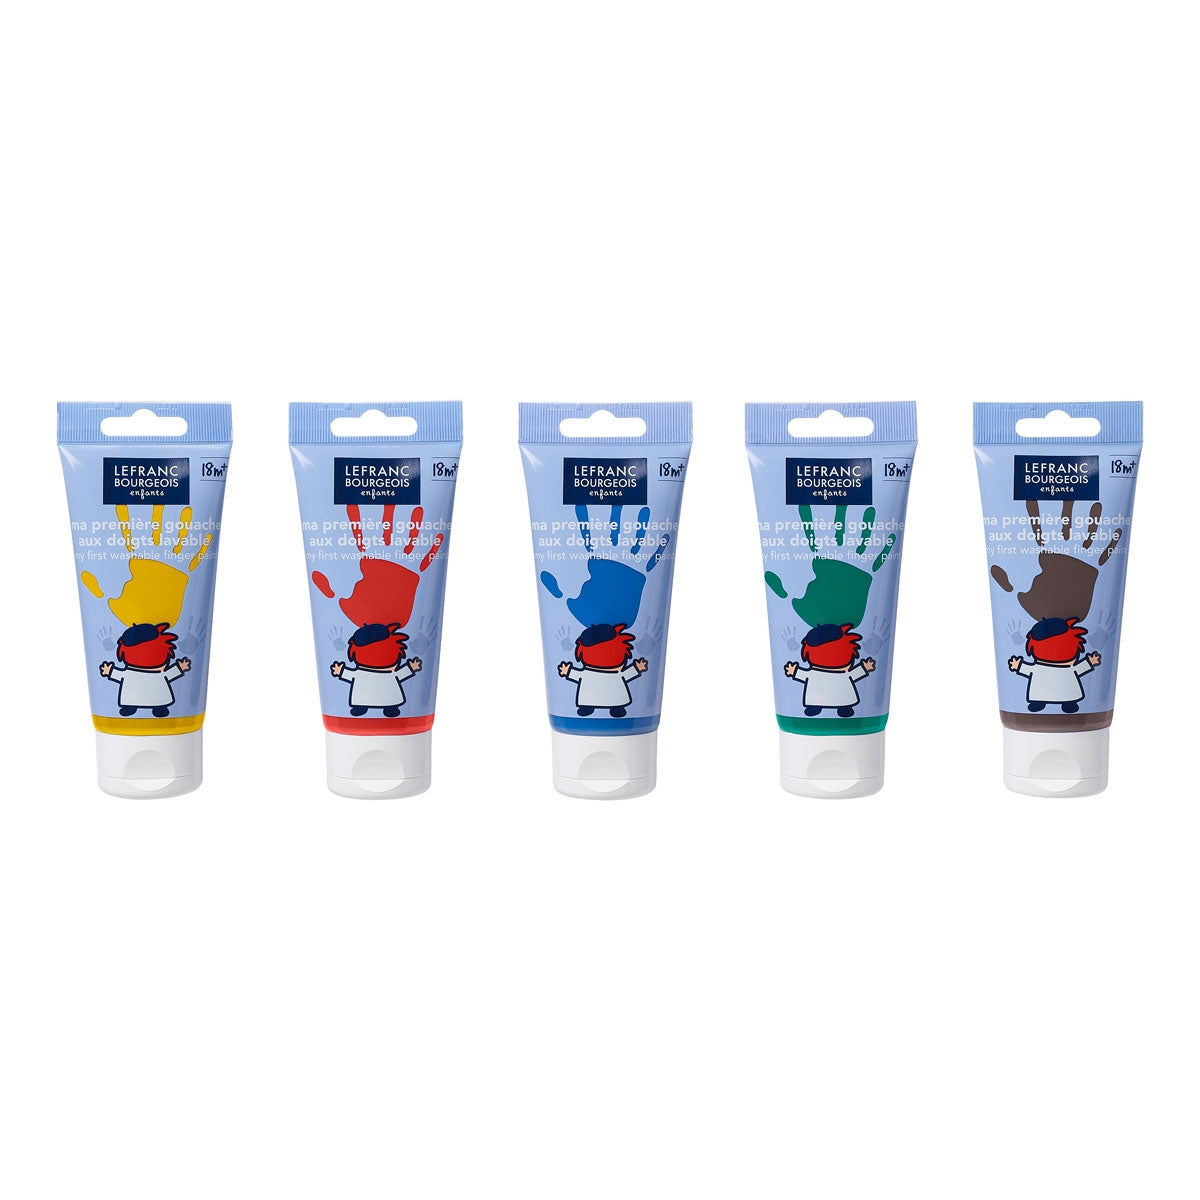 Color & Co - 5 x 80ml - Paint per dito lavabili per bambini